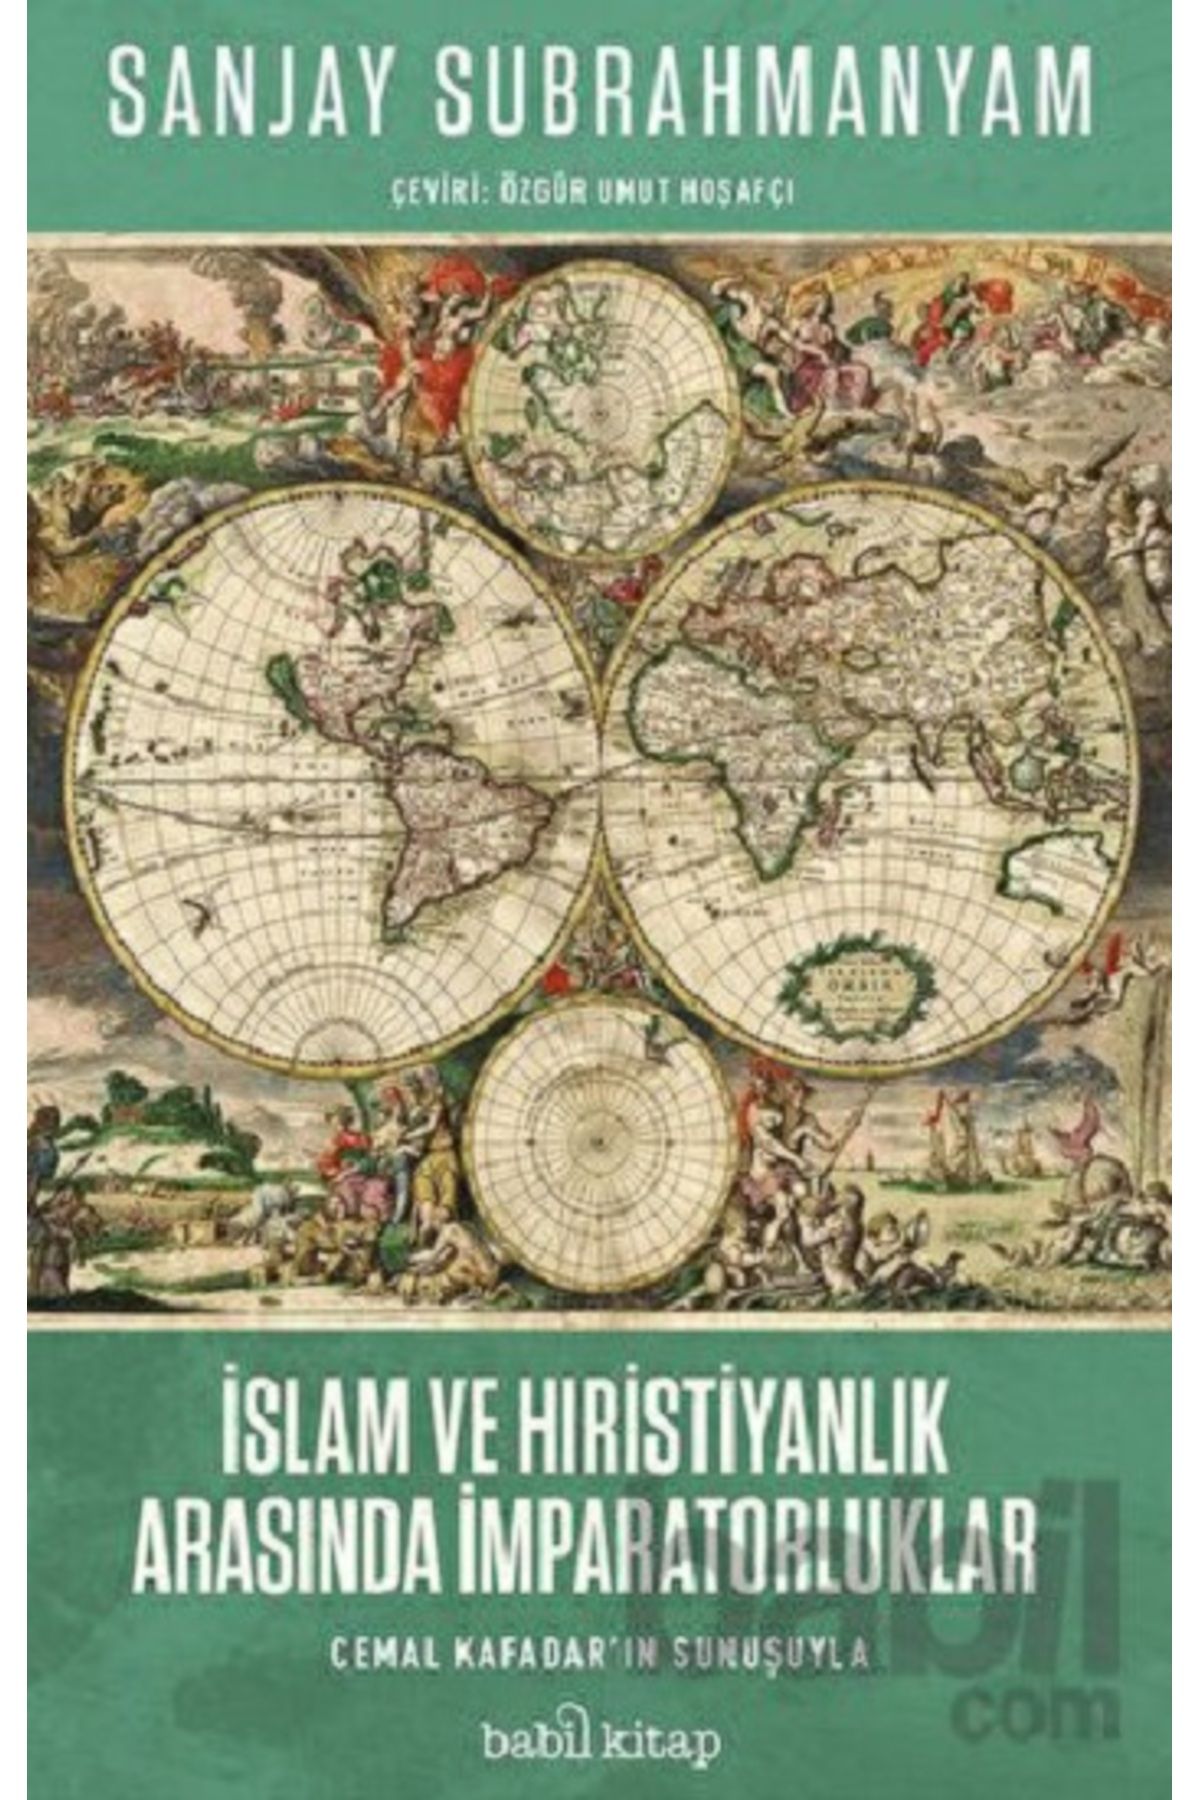 Babil Kitap İslam ve Hristiyanlık Arasında İmparatorluklar